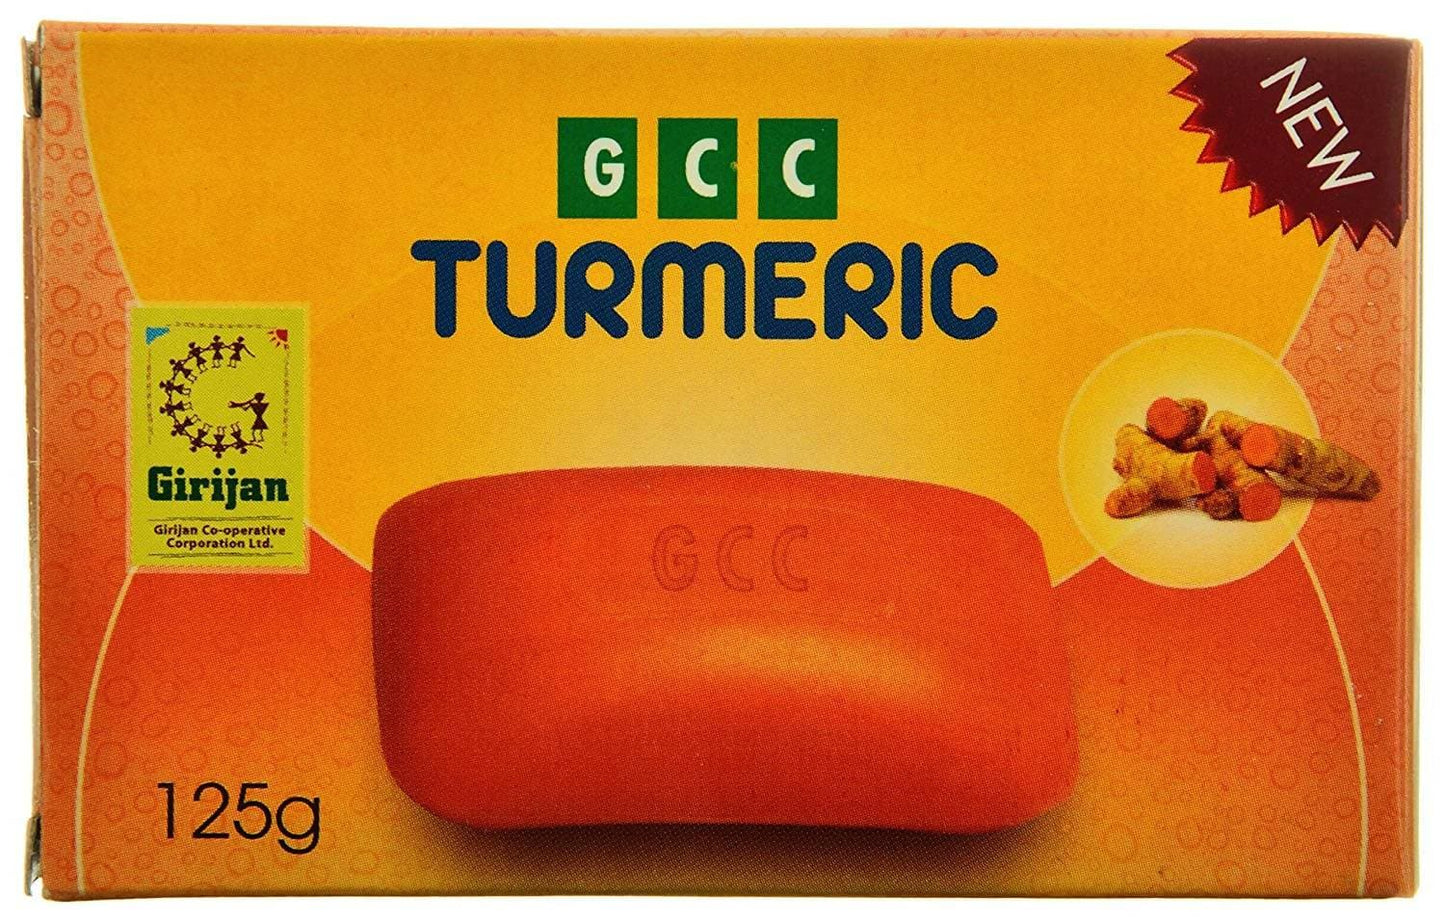 GCC Turmeric Soap